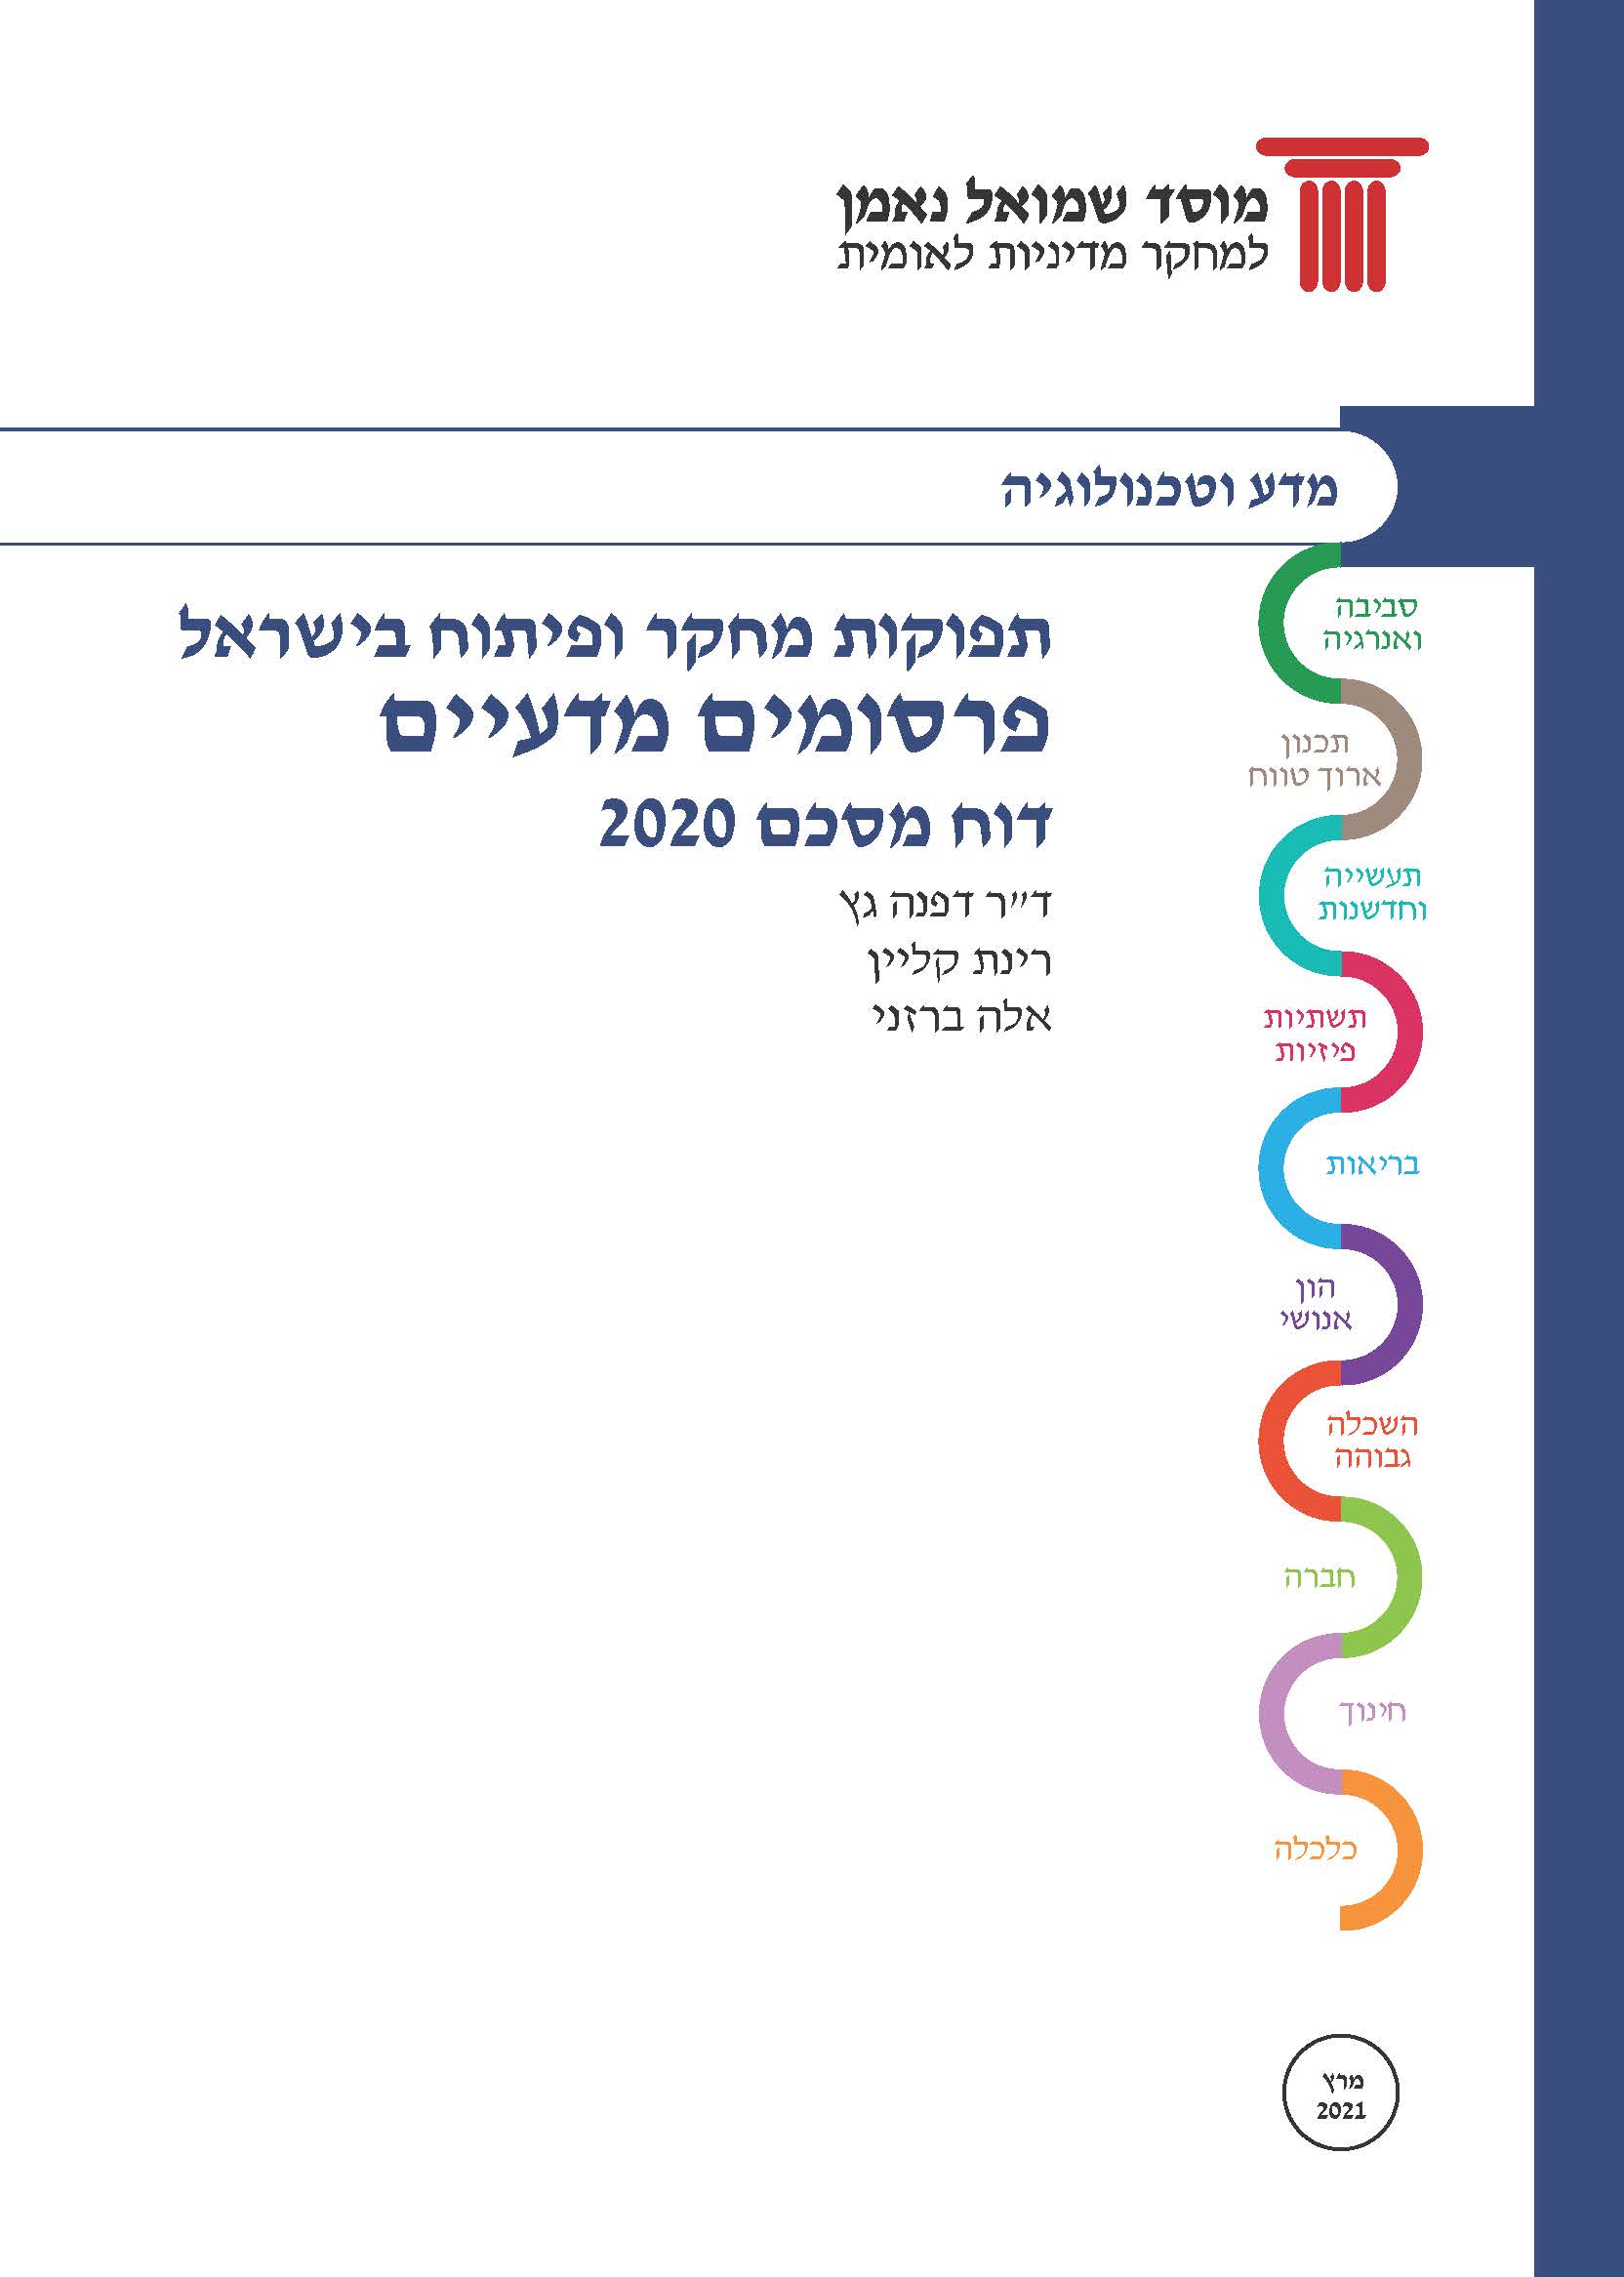 תפוקות מחקר ופיתוח בישראל / פרסומים מדעיים - 2020